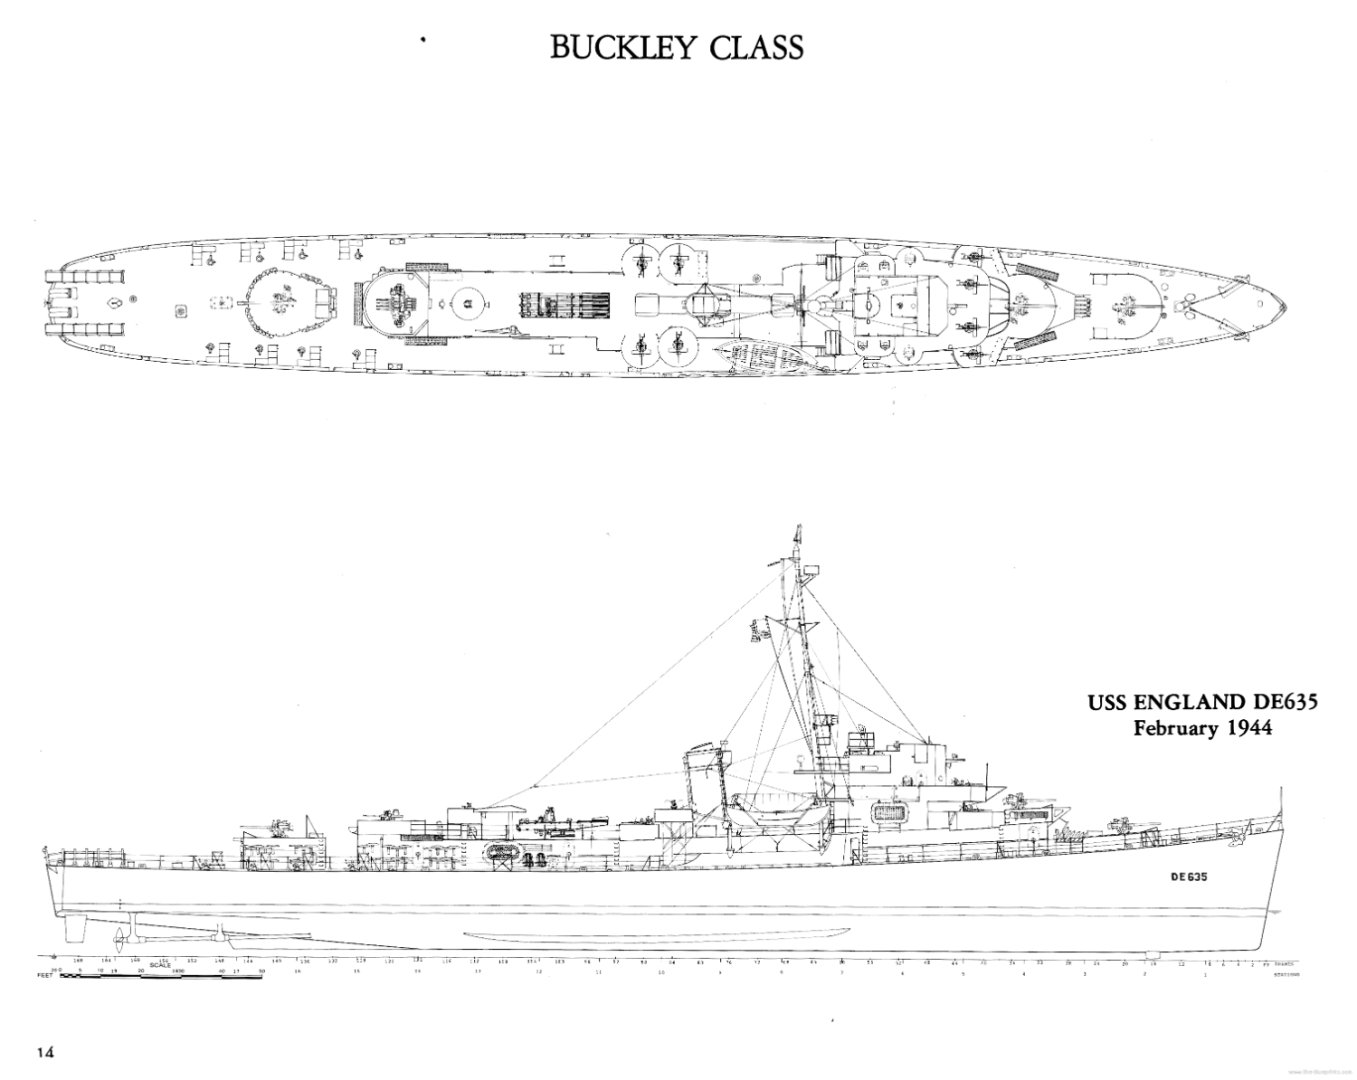 buckley-class-destroyer-escort-1944.thumb.png.d45ef6349c505f0bb59657bcd1e9ad5b.png